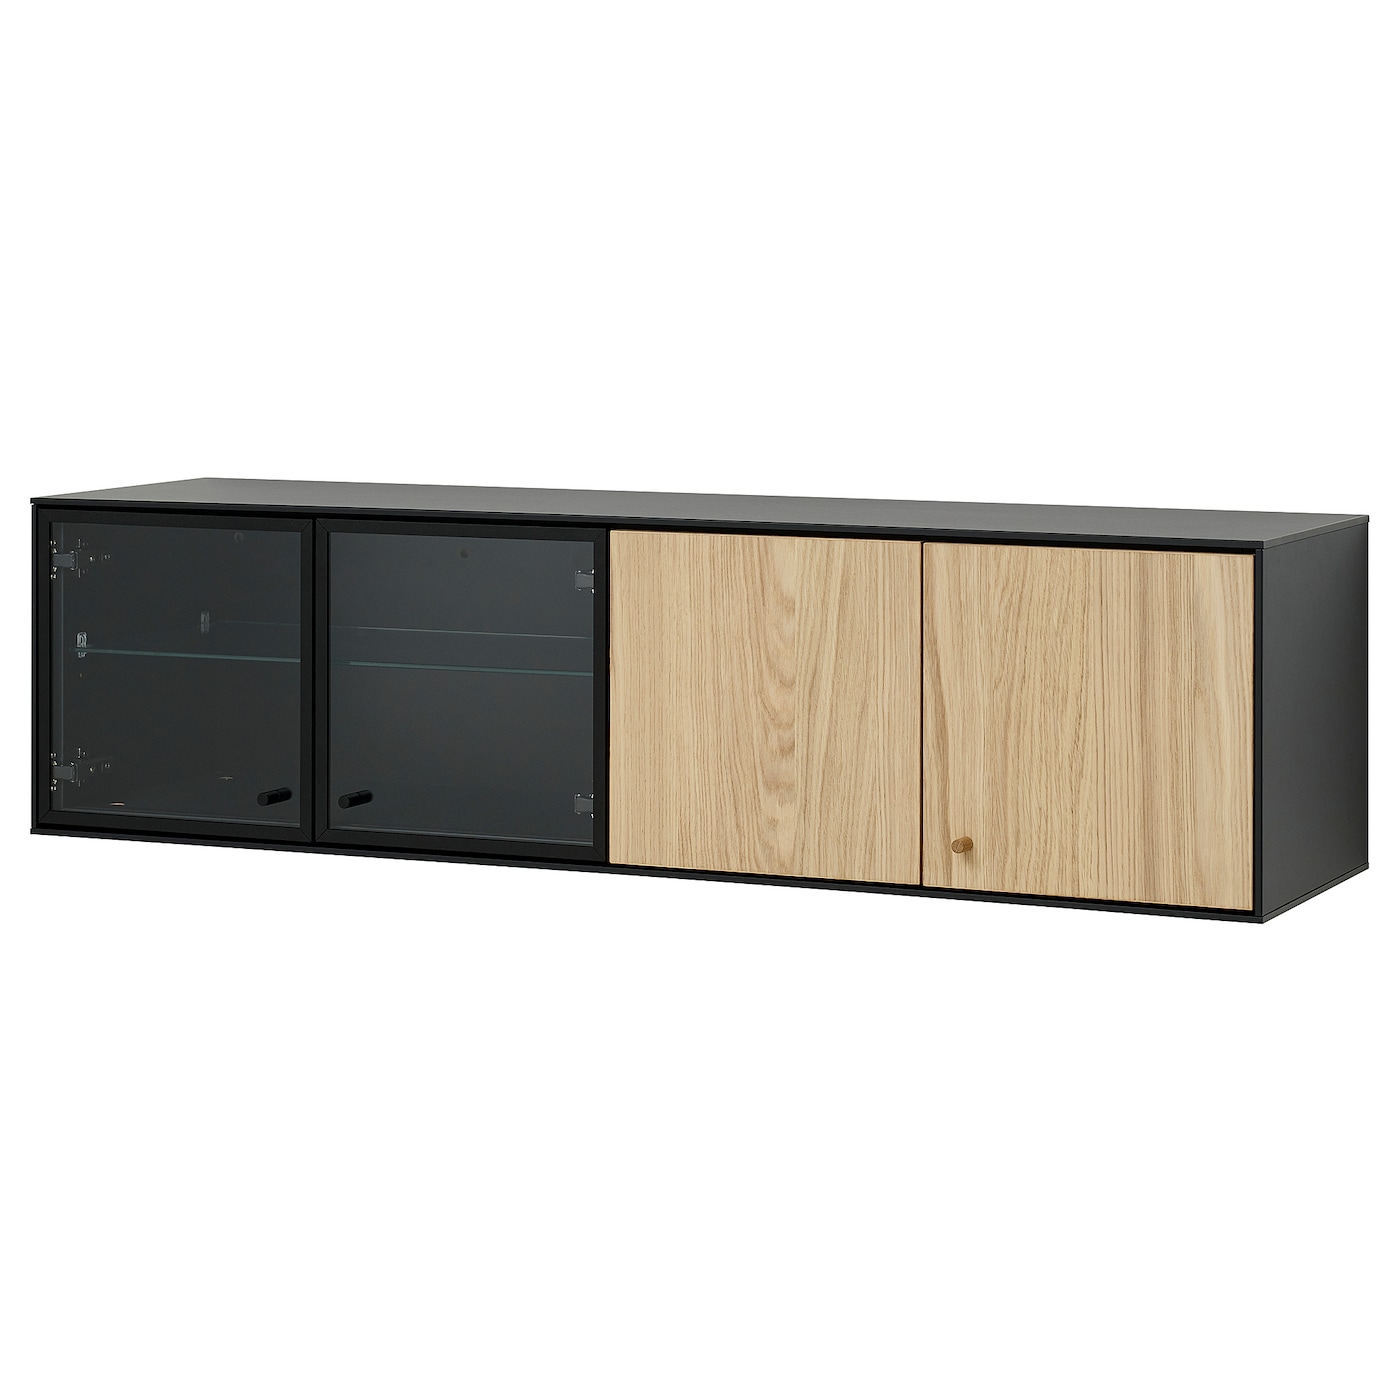 Полка настенная - BOASTAD IKEA/ БОАСТАД ИКЕА,  121х32х32 см,  черный/под беленый дуб